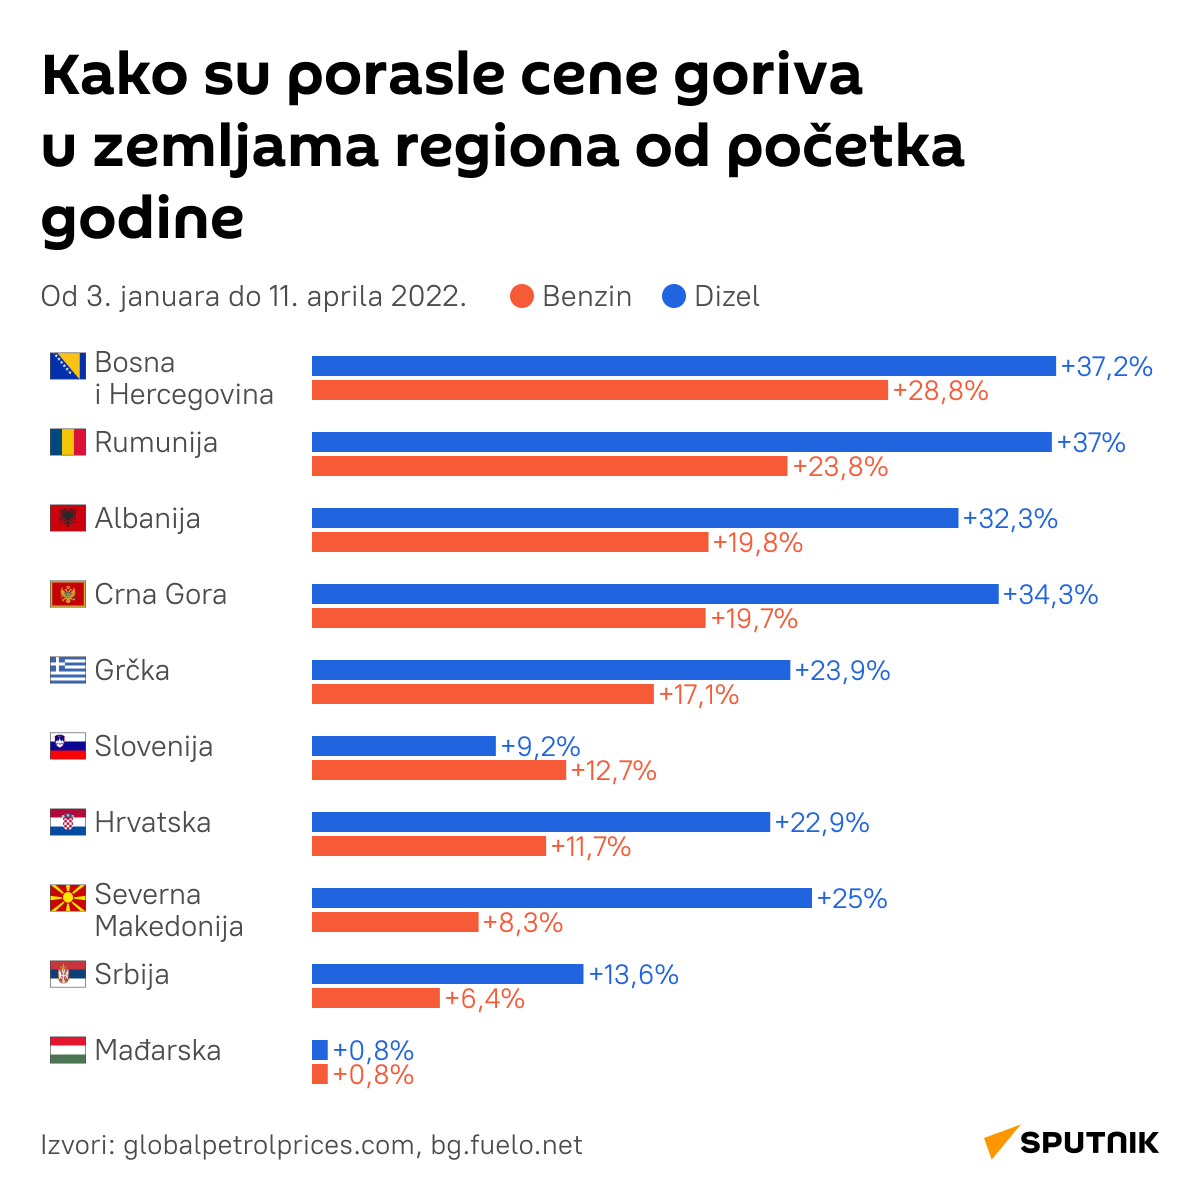 Porast cena goriva - infografika LATINICA desk - Sputnik Srbija